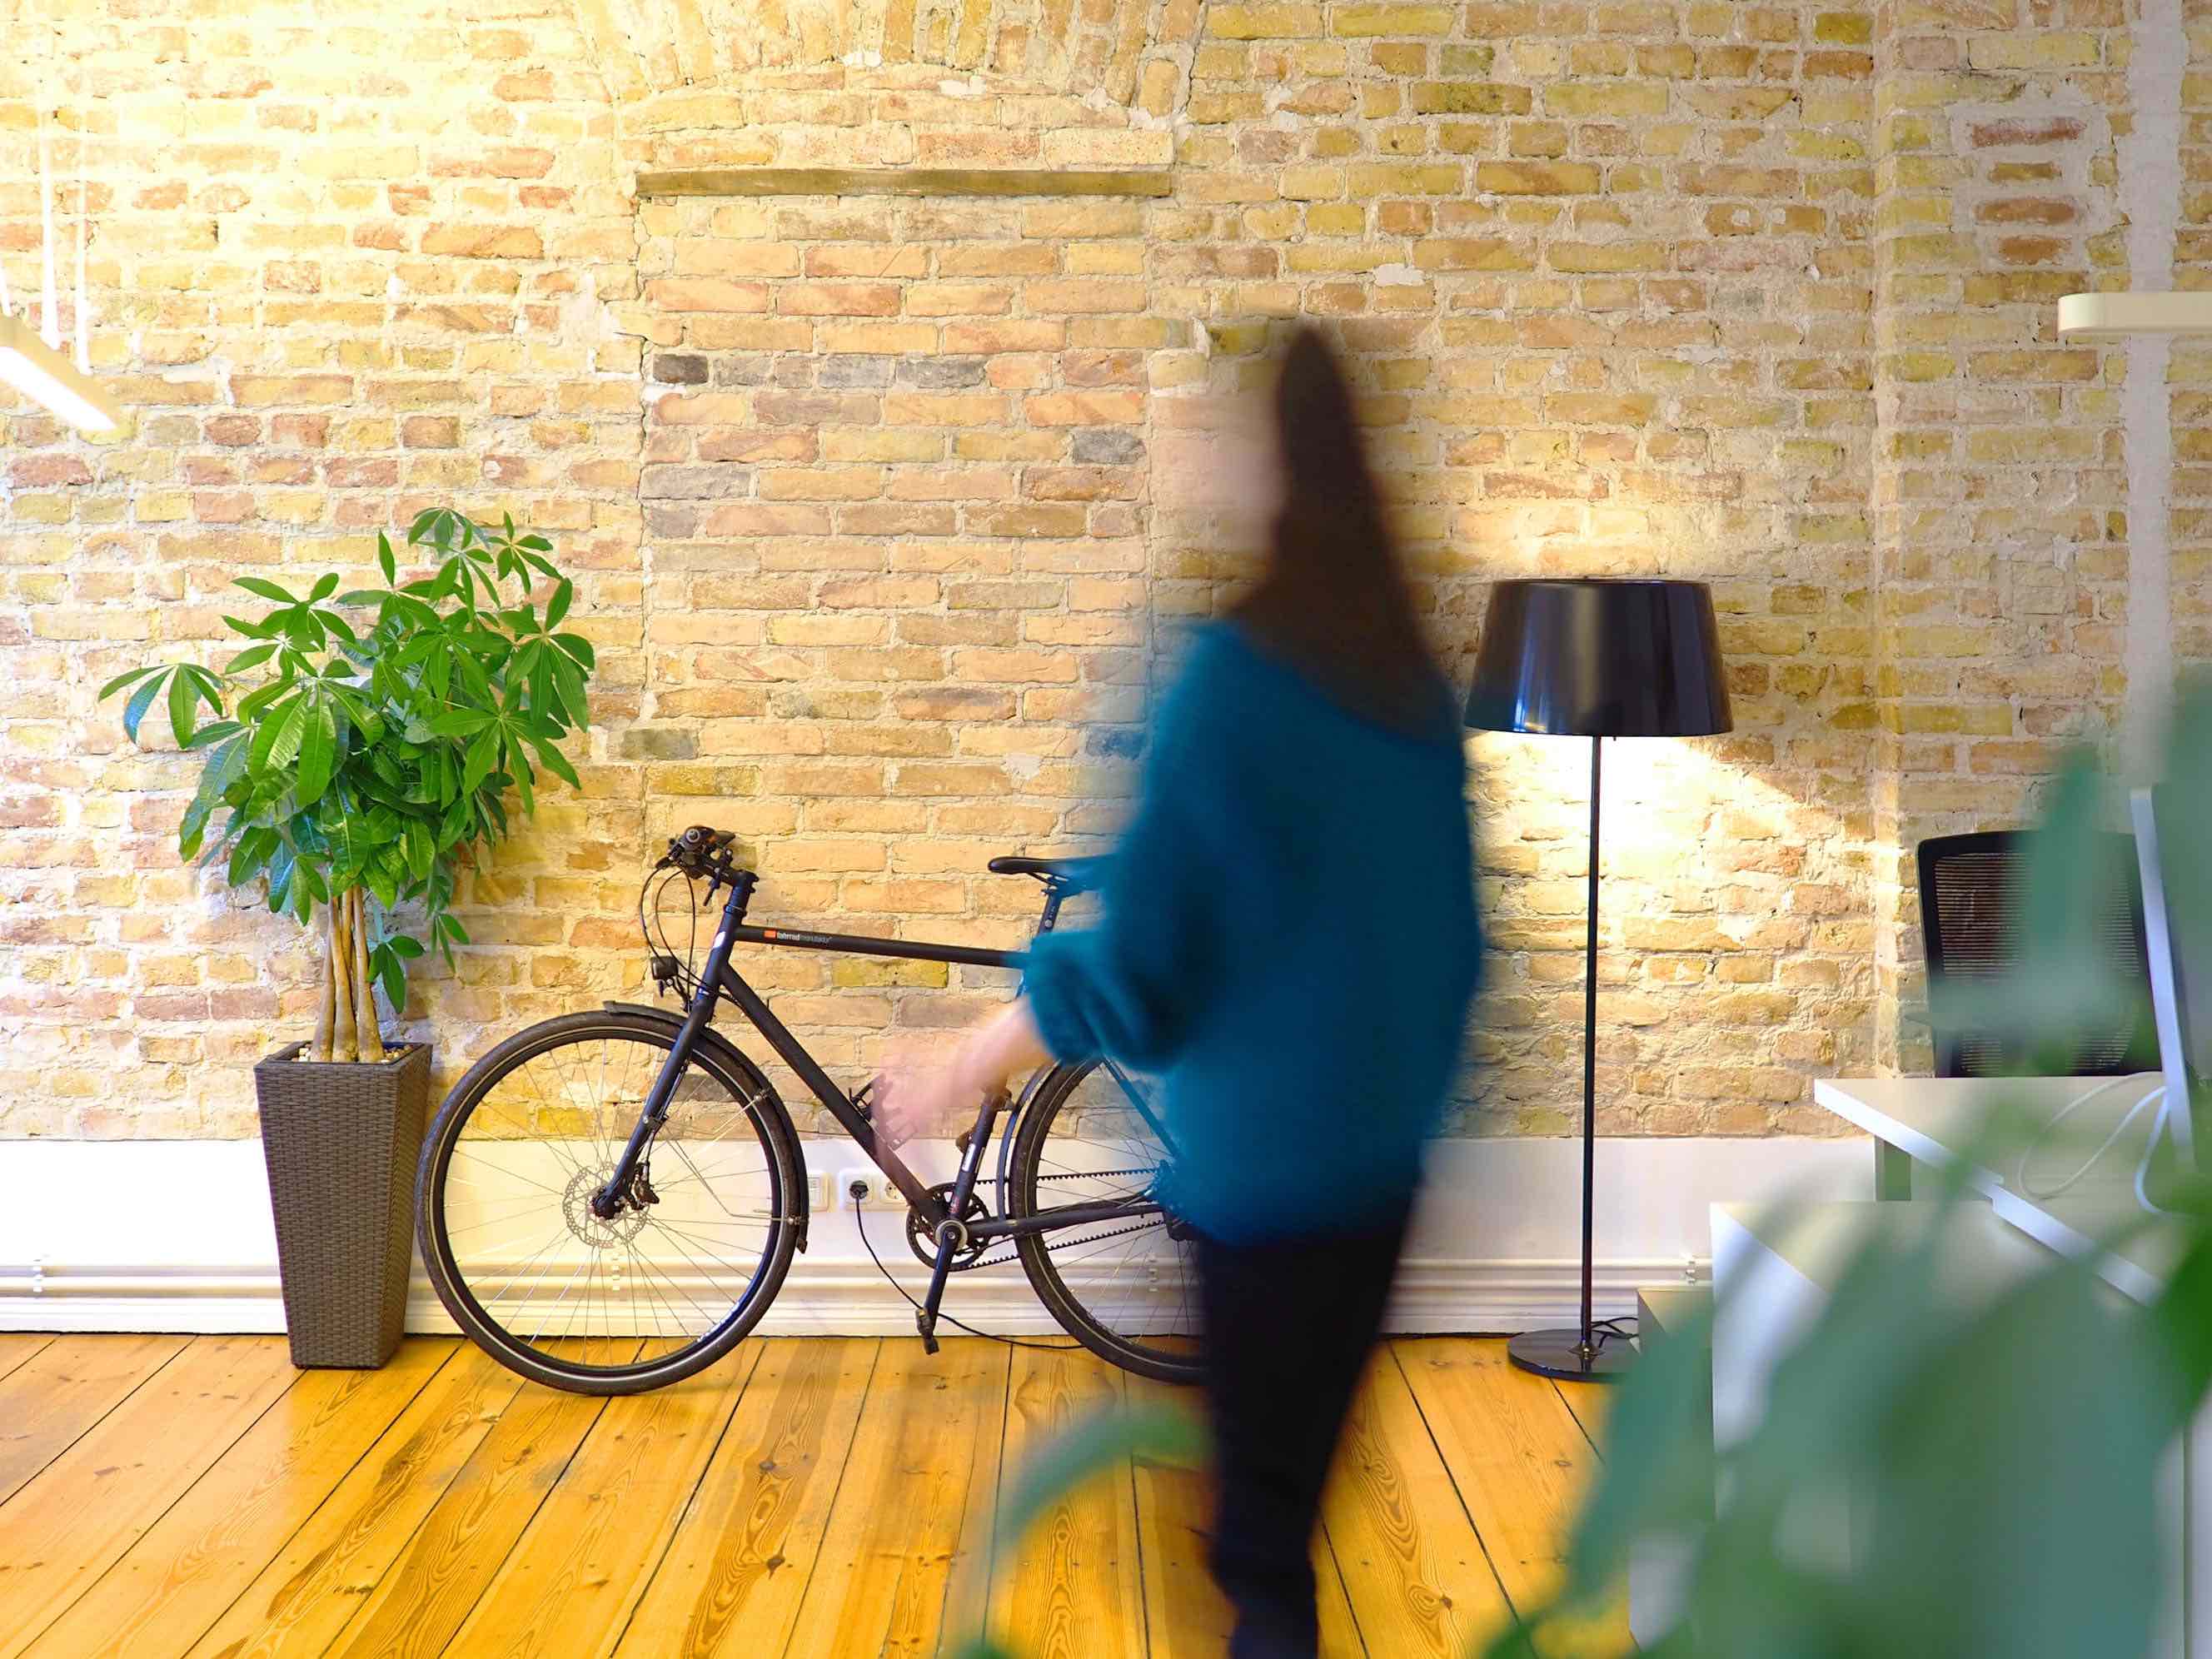 Fahrrad stehend an einer Backsteinmauer. Person läuft durch Bild.